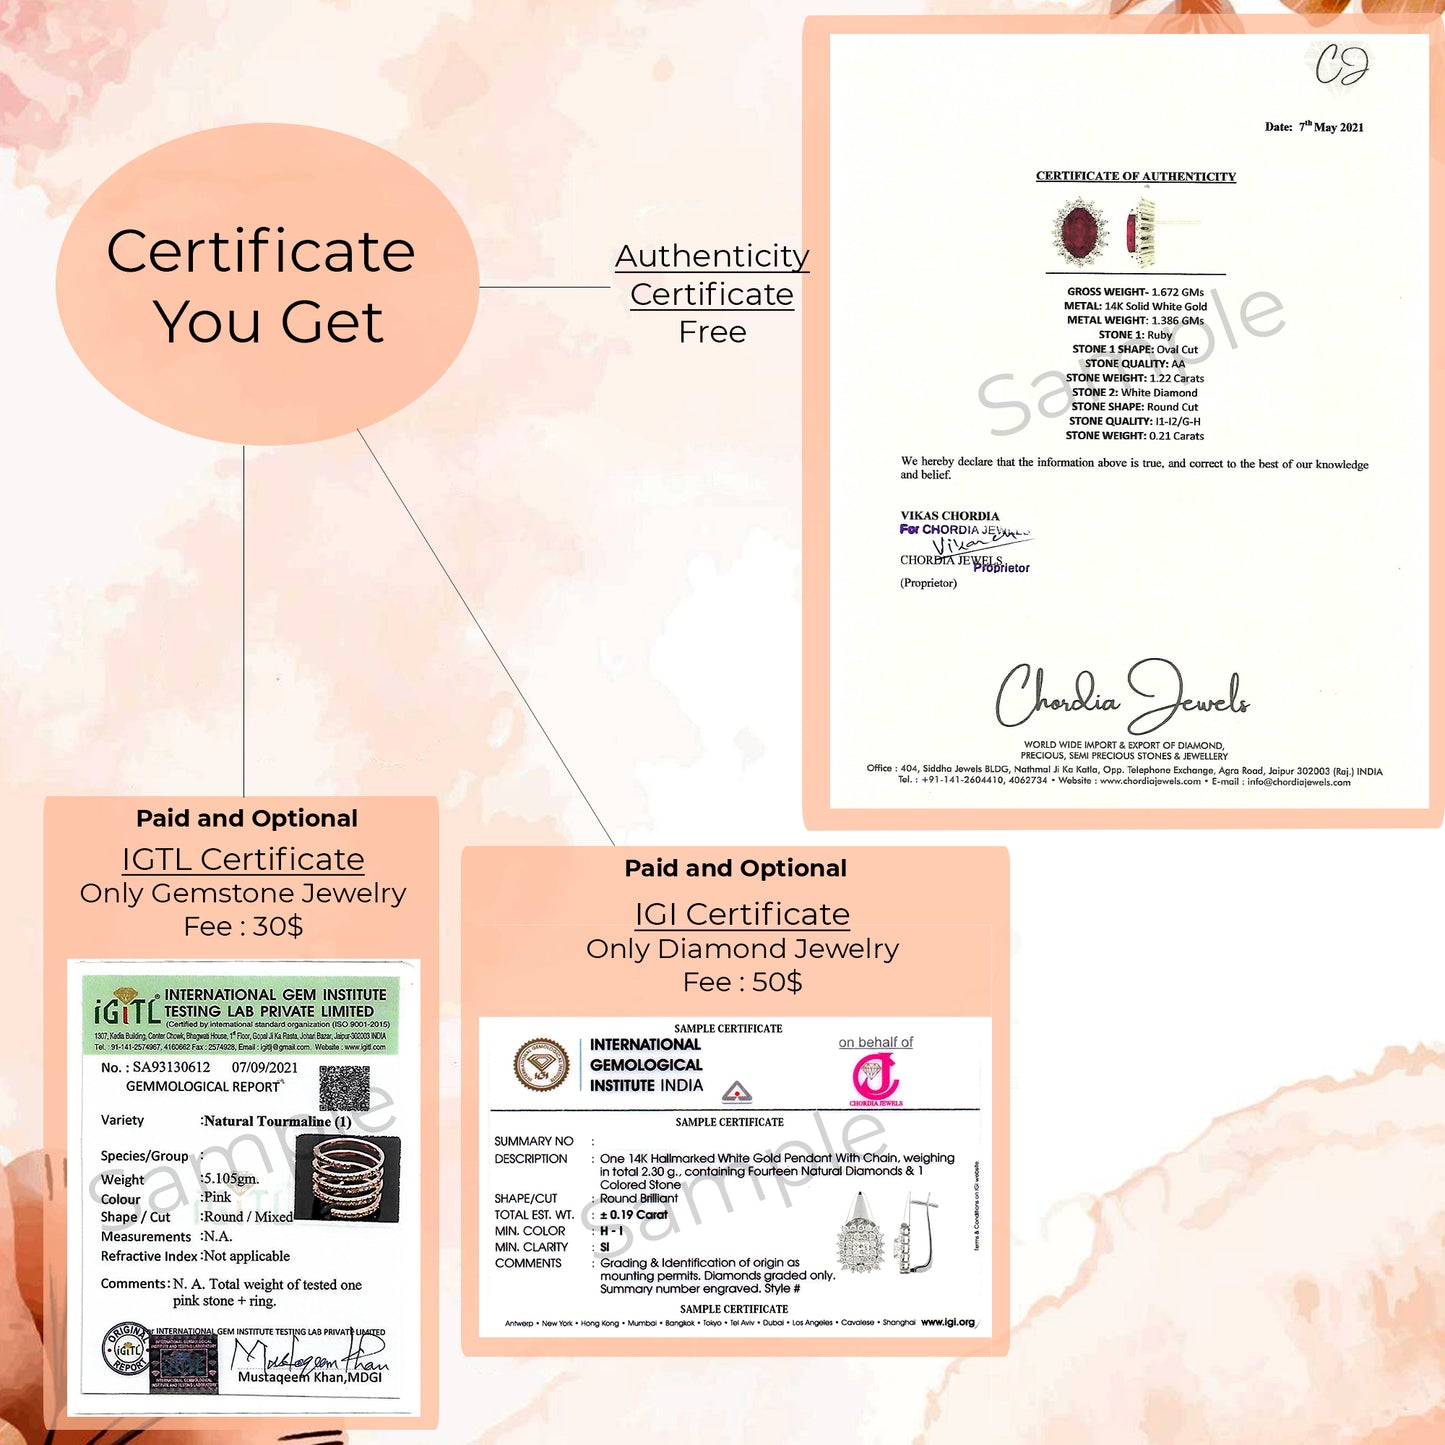 chordia jewels certificate